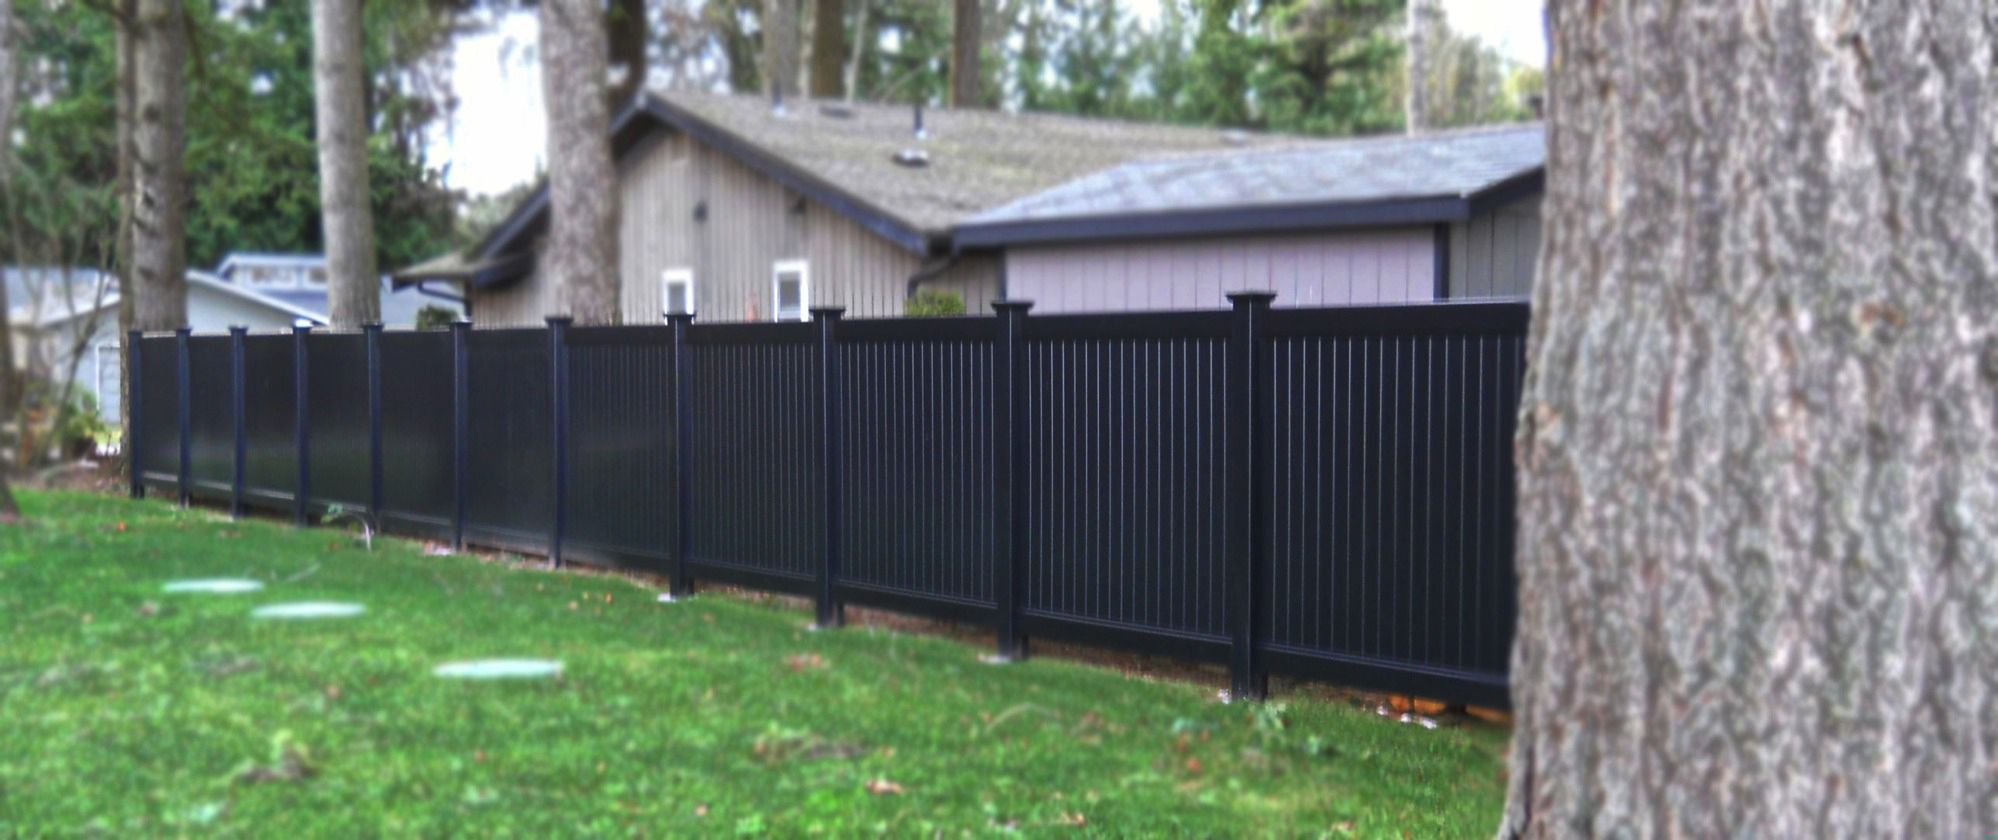 8 Ft High Vinyl Fence Panels Fences Design throughout measurements 1998 X 840